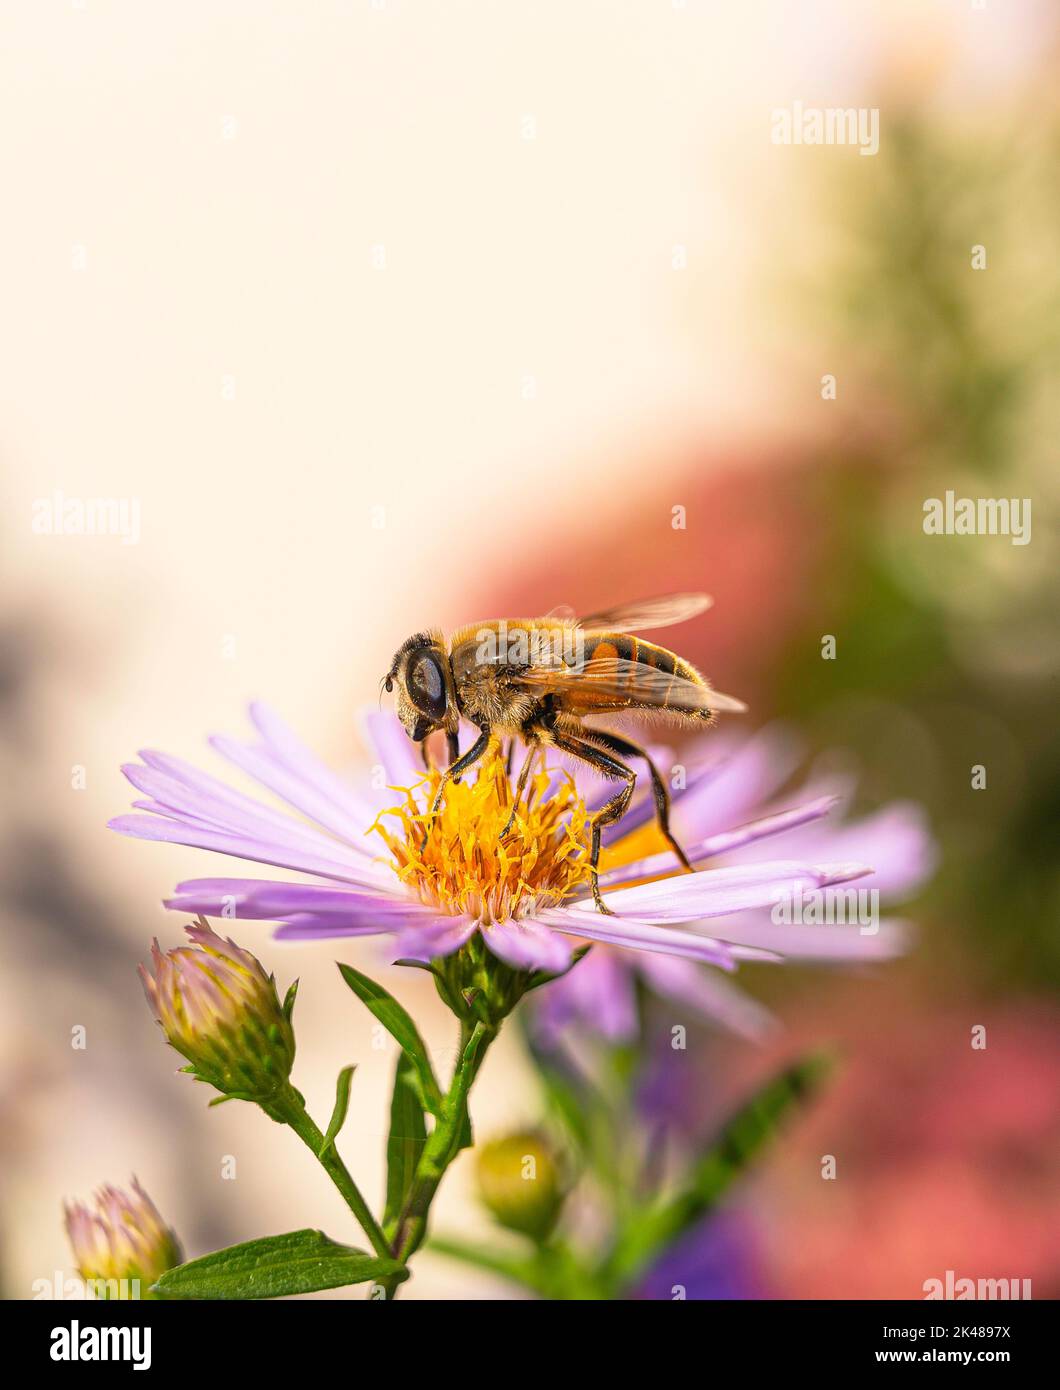 La mouche de drone mâle 'Eristalis tenax' recueille le pollen d'une fleur jaune et rose, Aster frikartii 'Monch' à fond mou. Banque D'Images